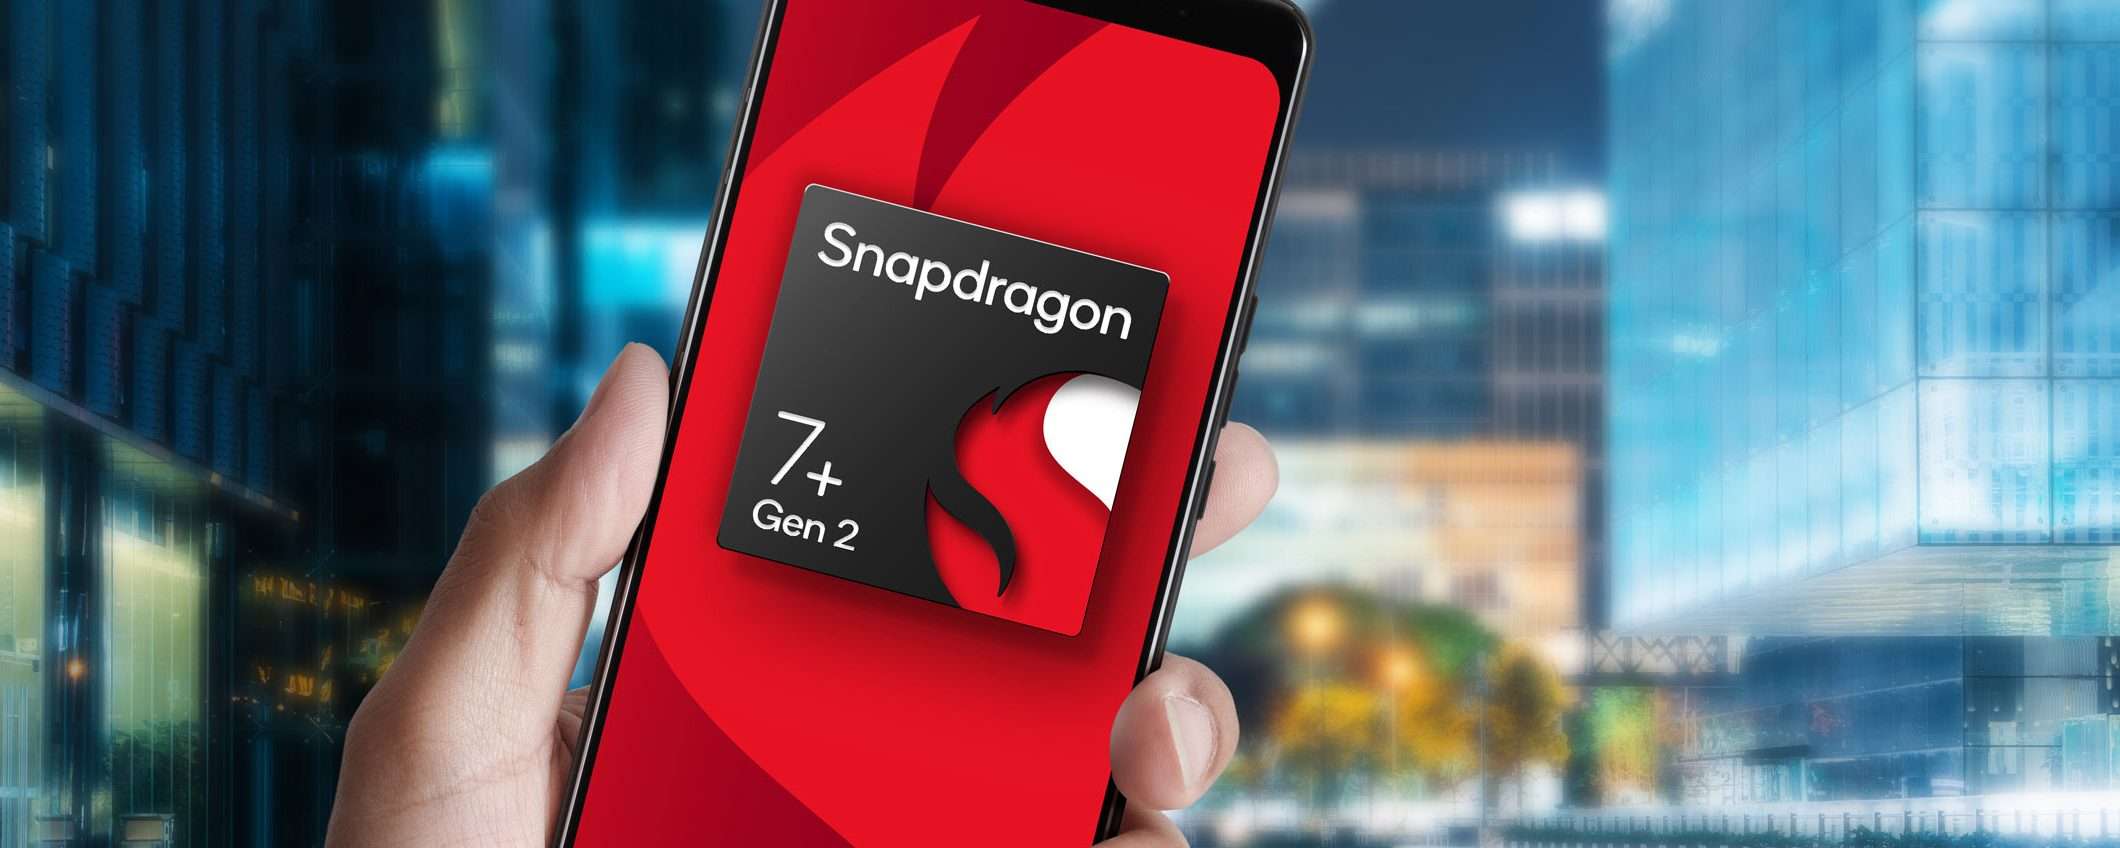 Tutto sul nuovo Qualcomm Snapdragon 7+ Gen 2